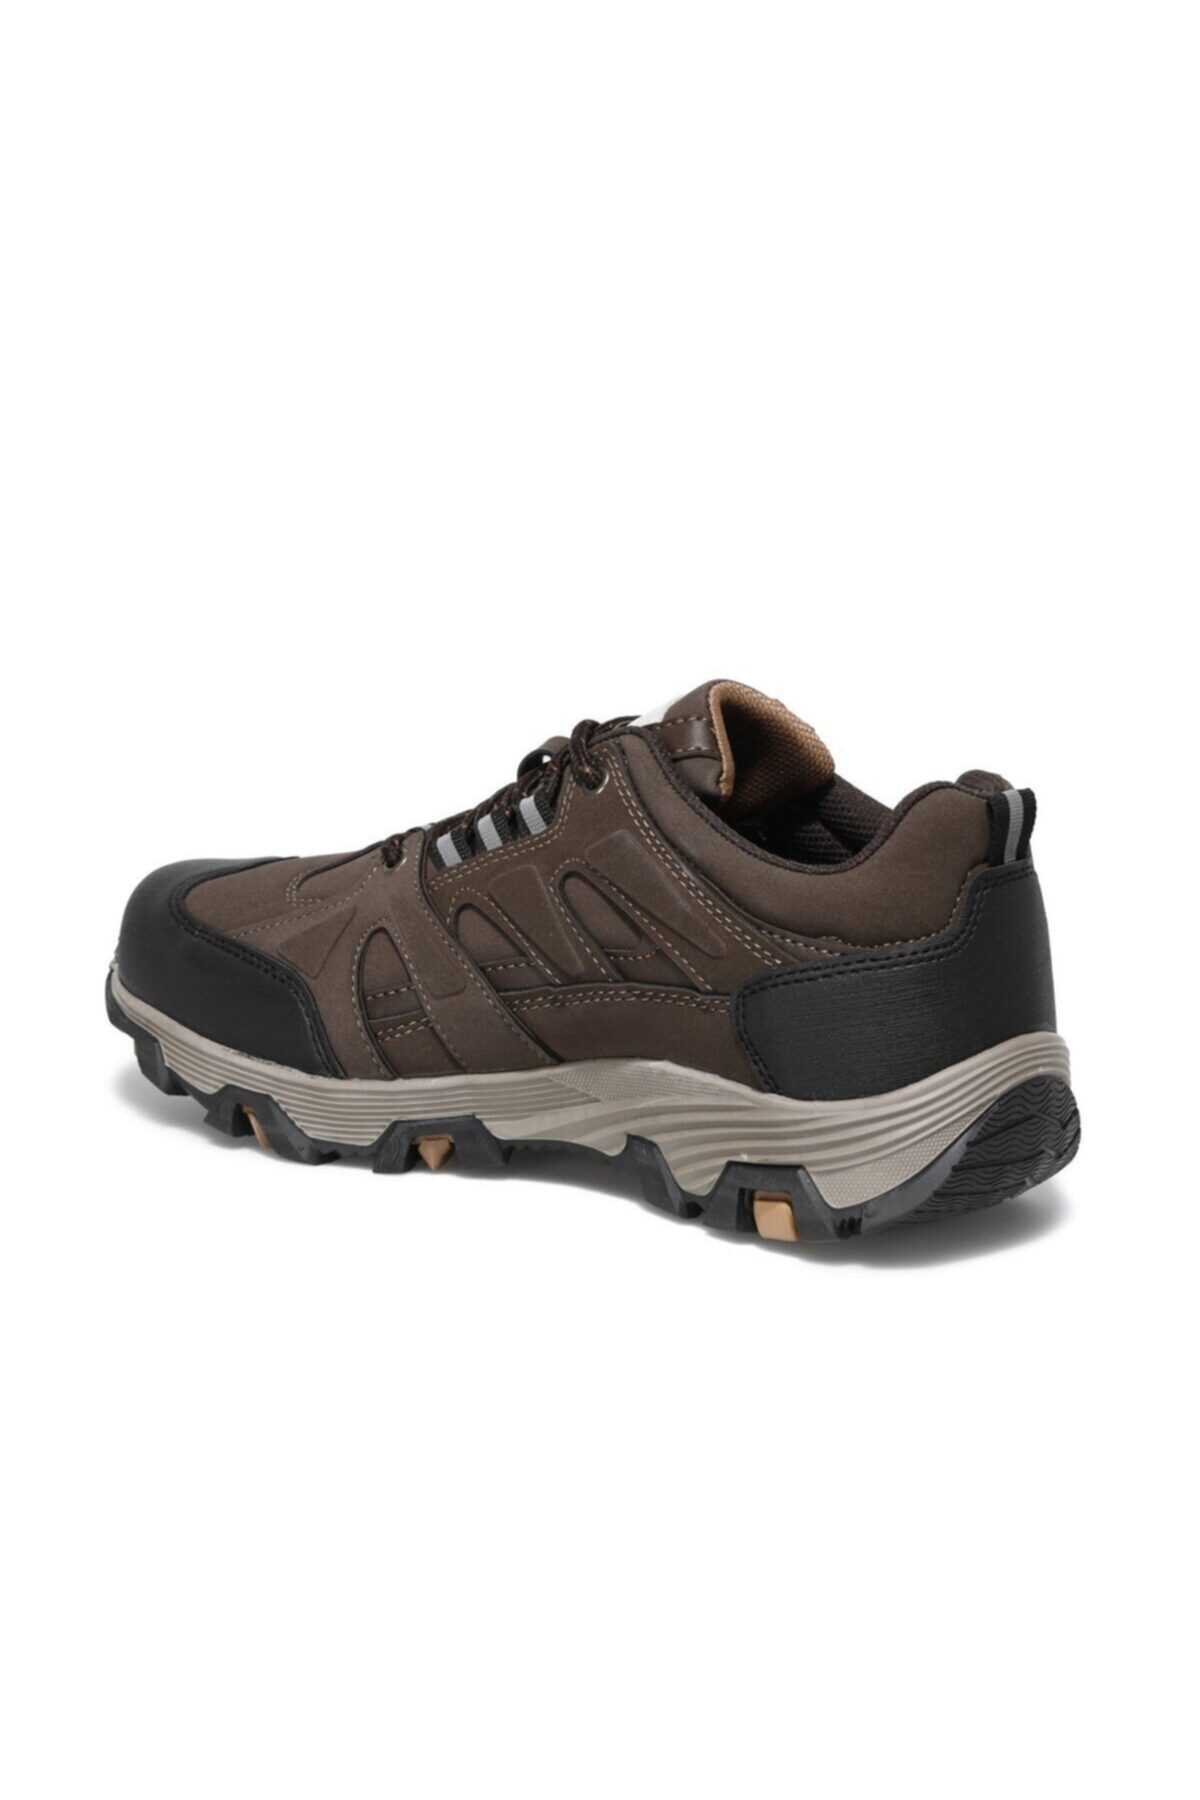 کفش کوهنوردی ارزان برند کینتیکس kinetix رنگ قهوه ای کد ty115632646